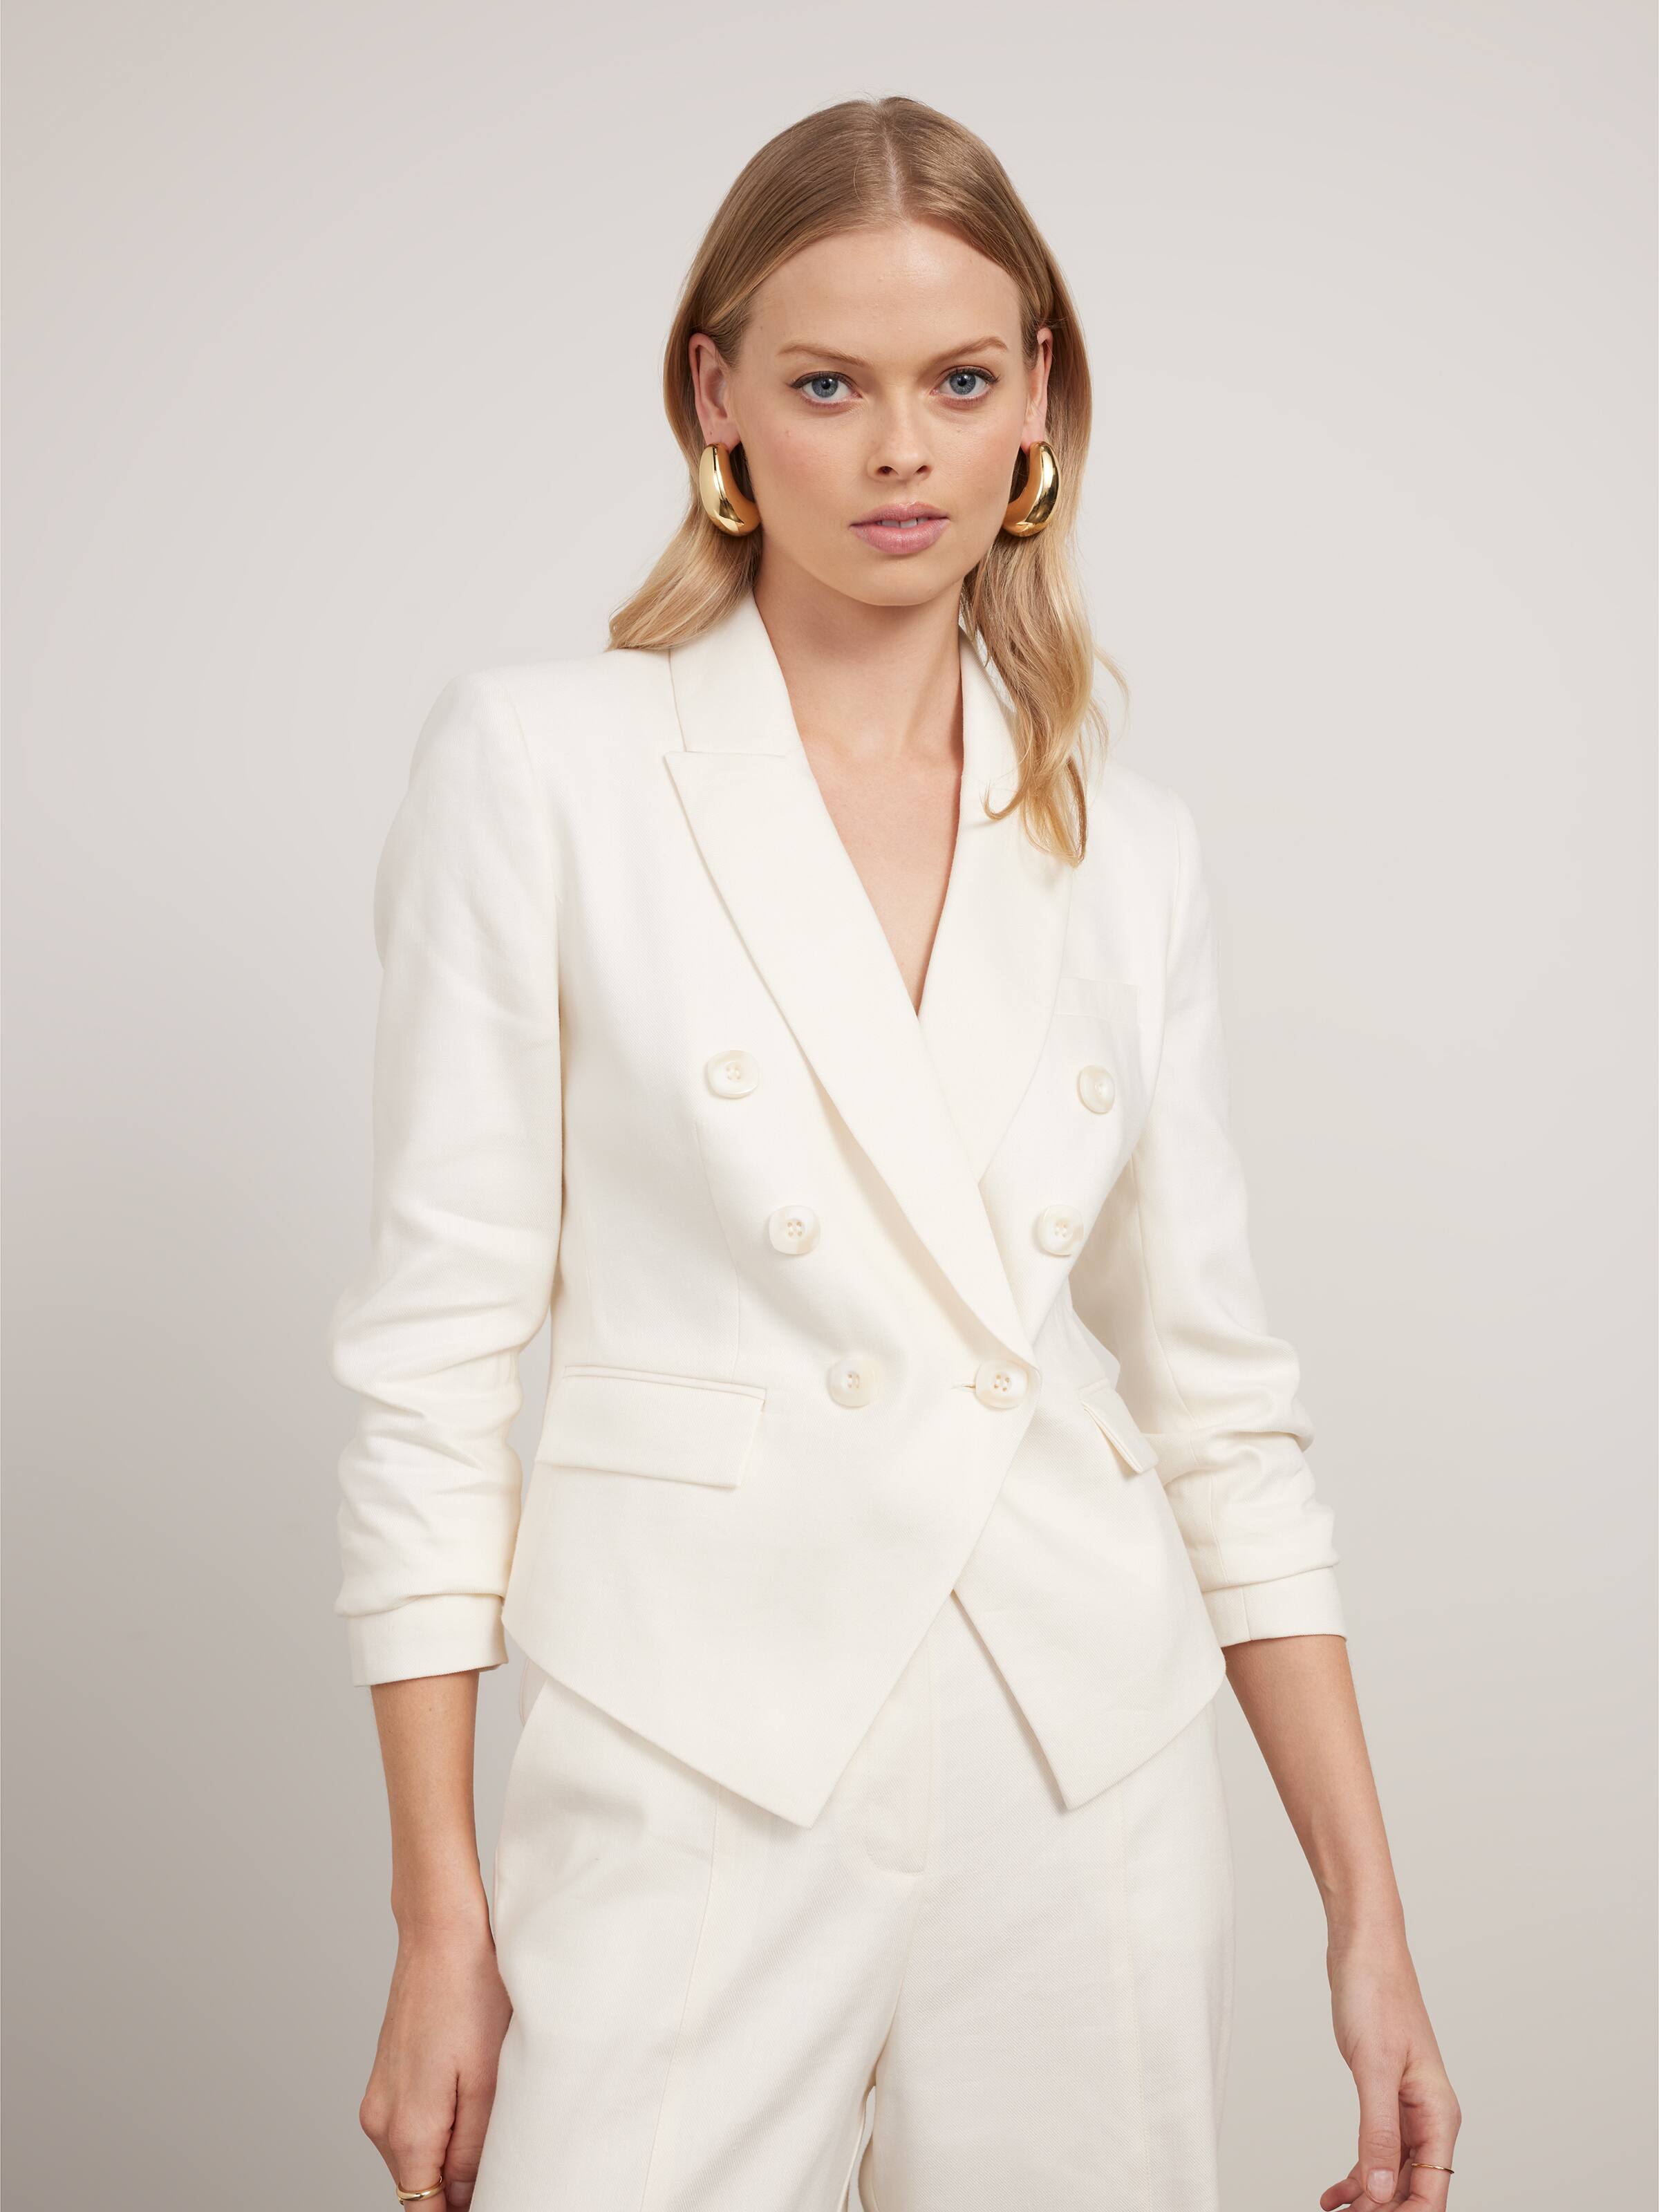 Women's Jackets - Blazer Jackets, Suit Jackets & Puffers